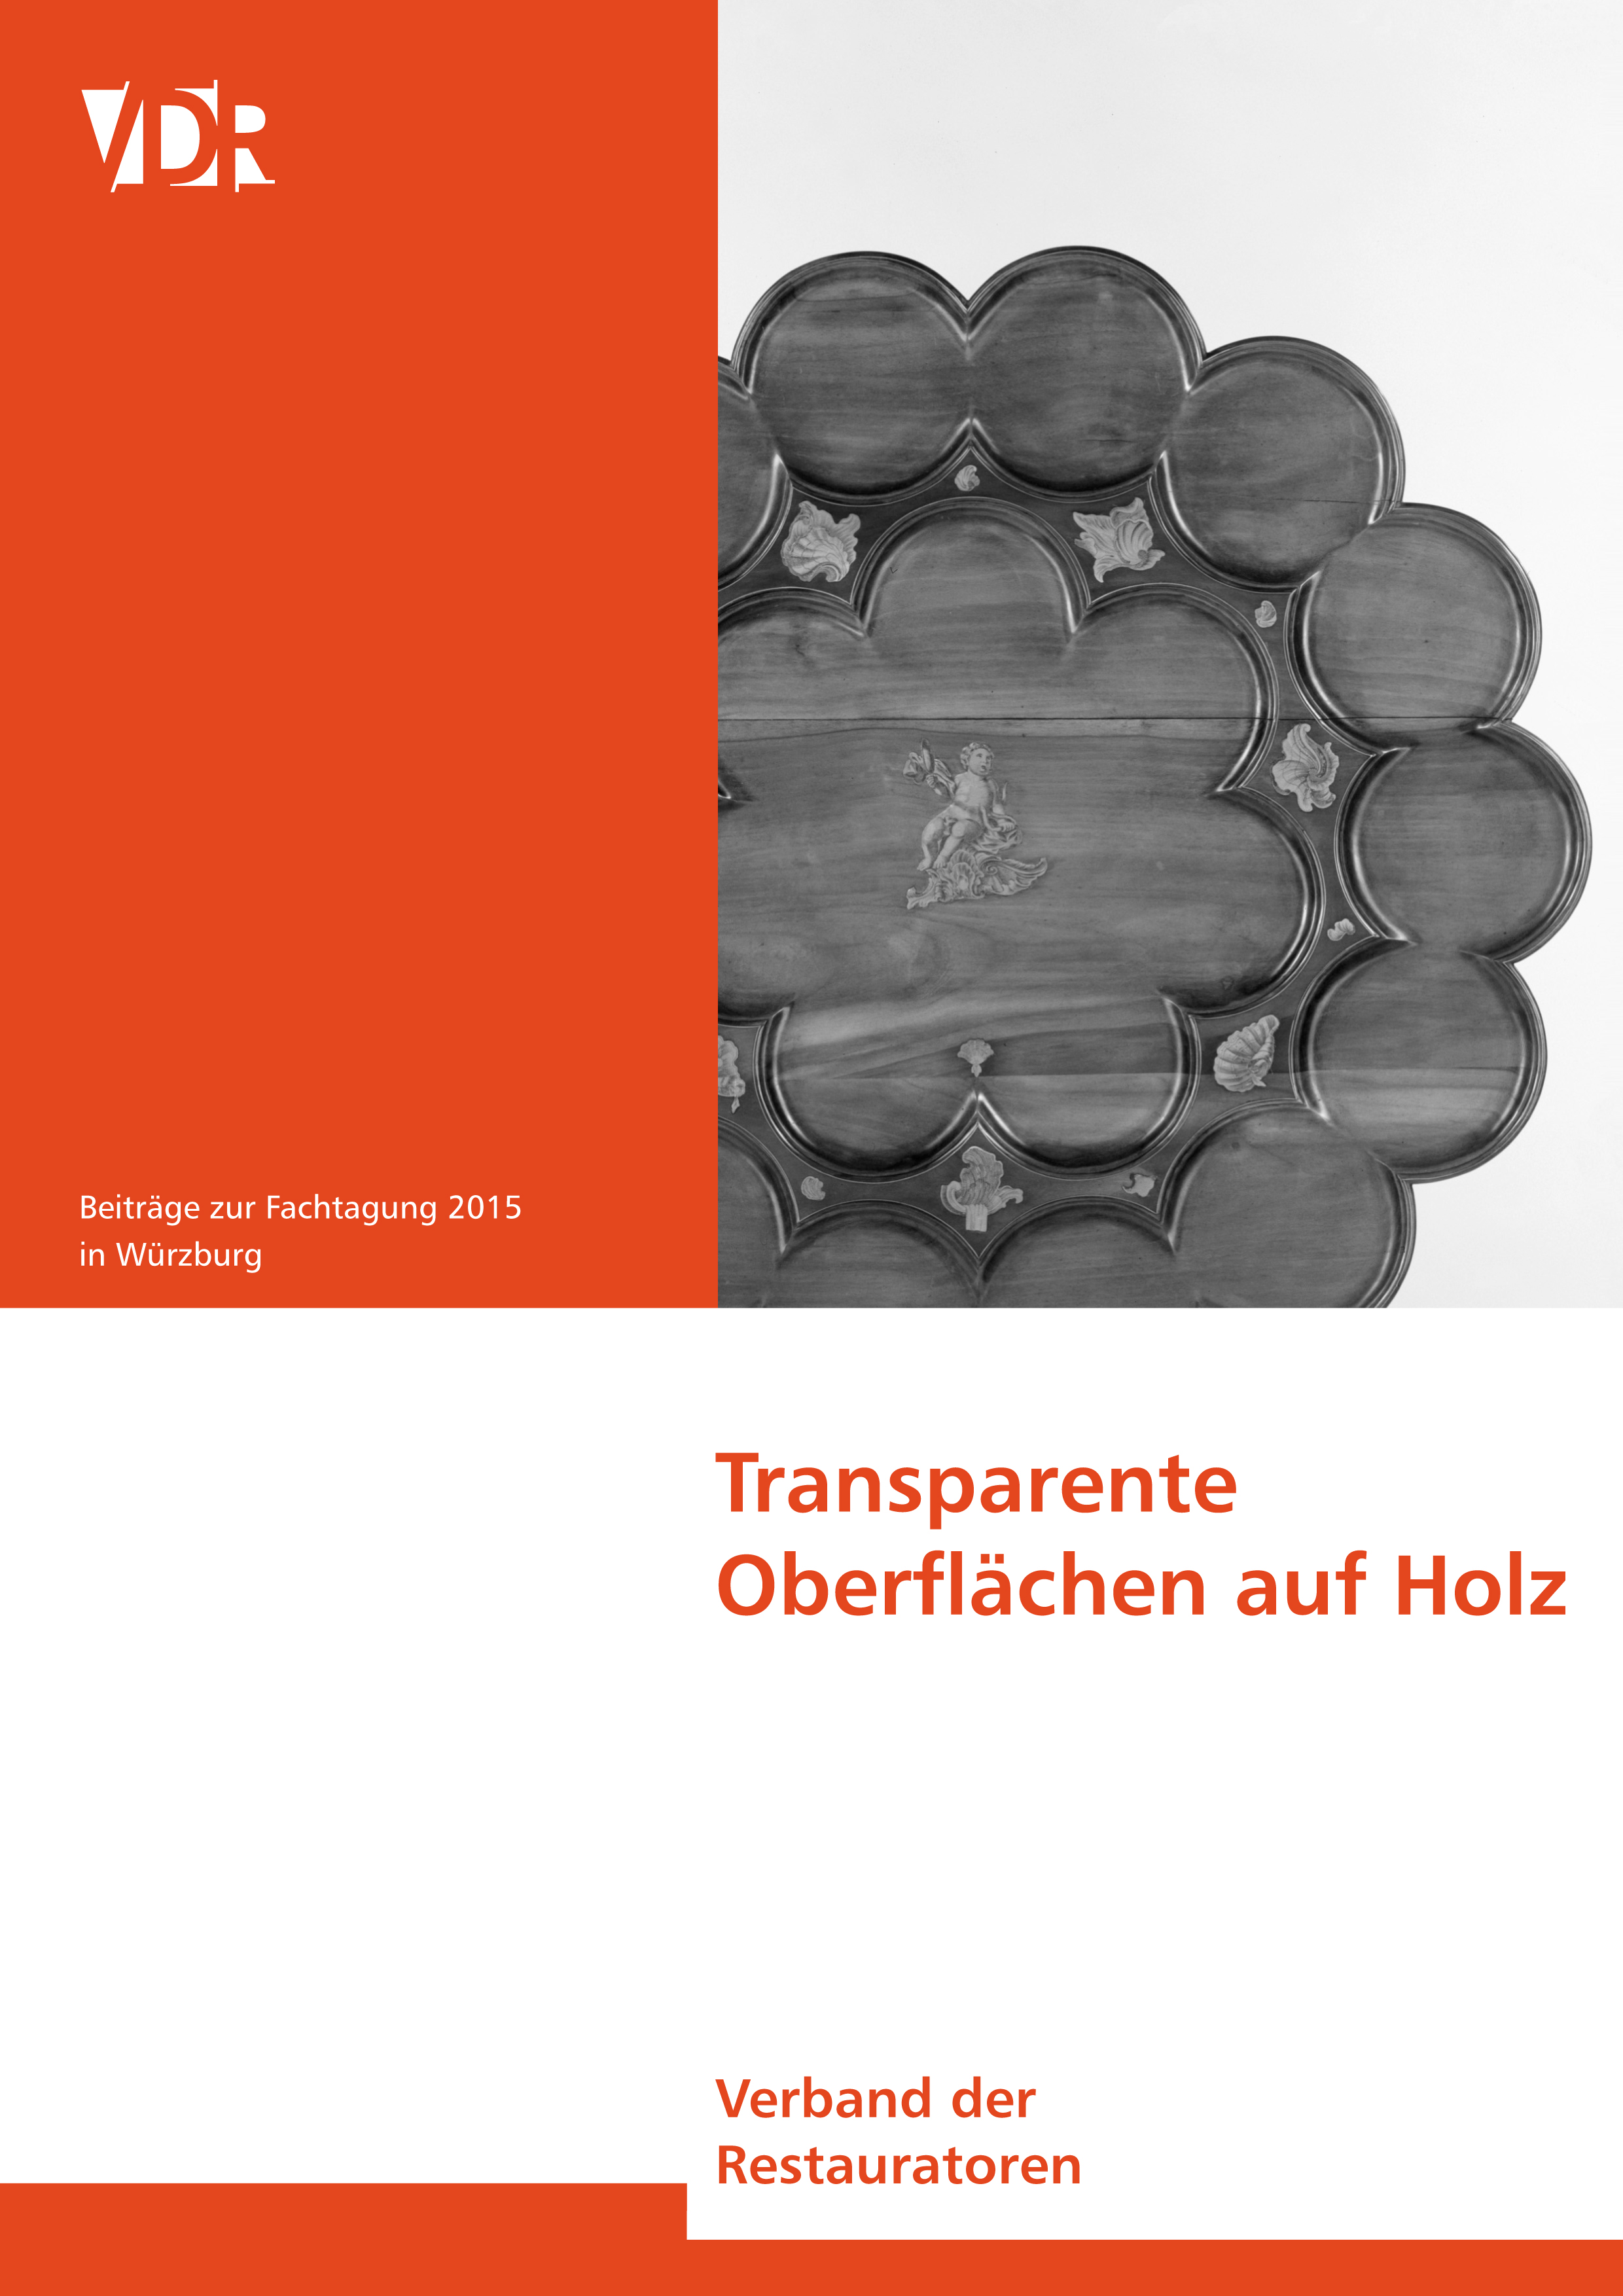 Transparente Oberflächen, herausgegeben vom VDR im Frühjahr 2017, 2. Auflage 2019